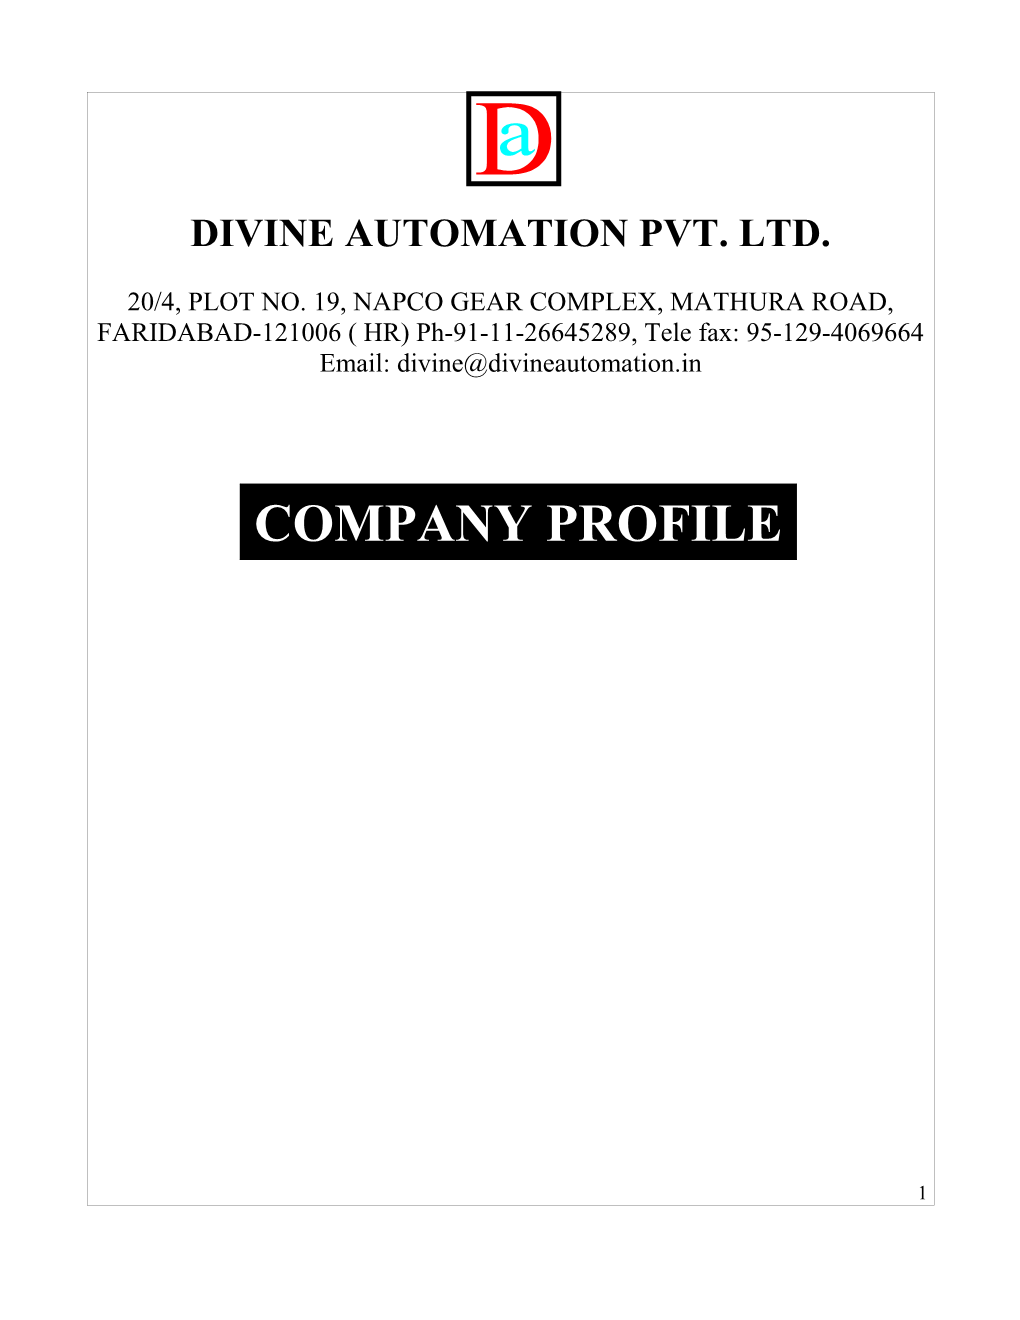 Divine Automation Pvt. Ltd